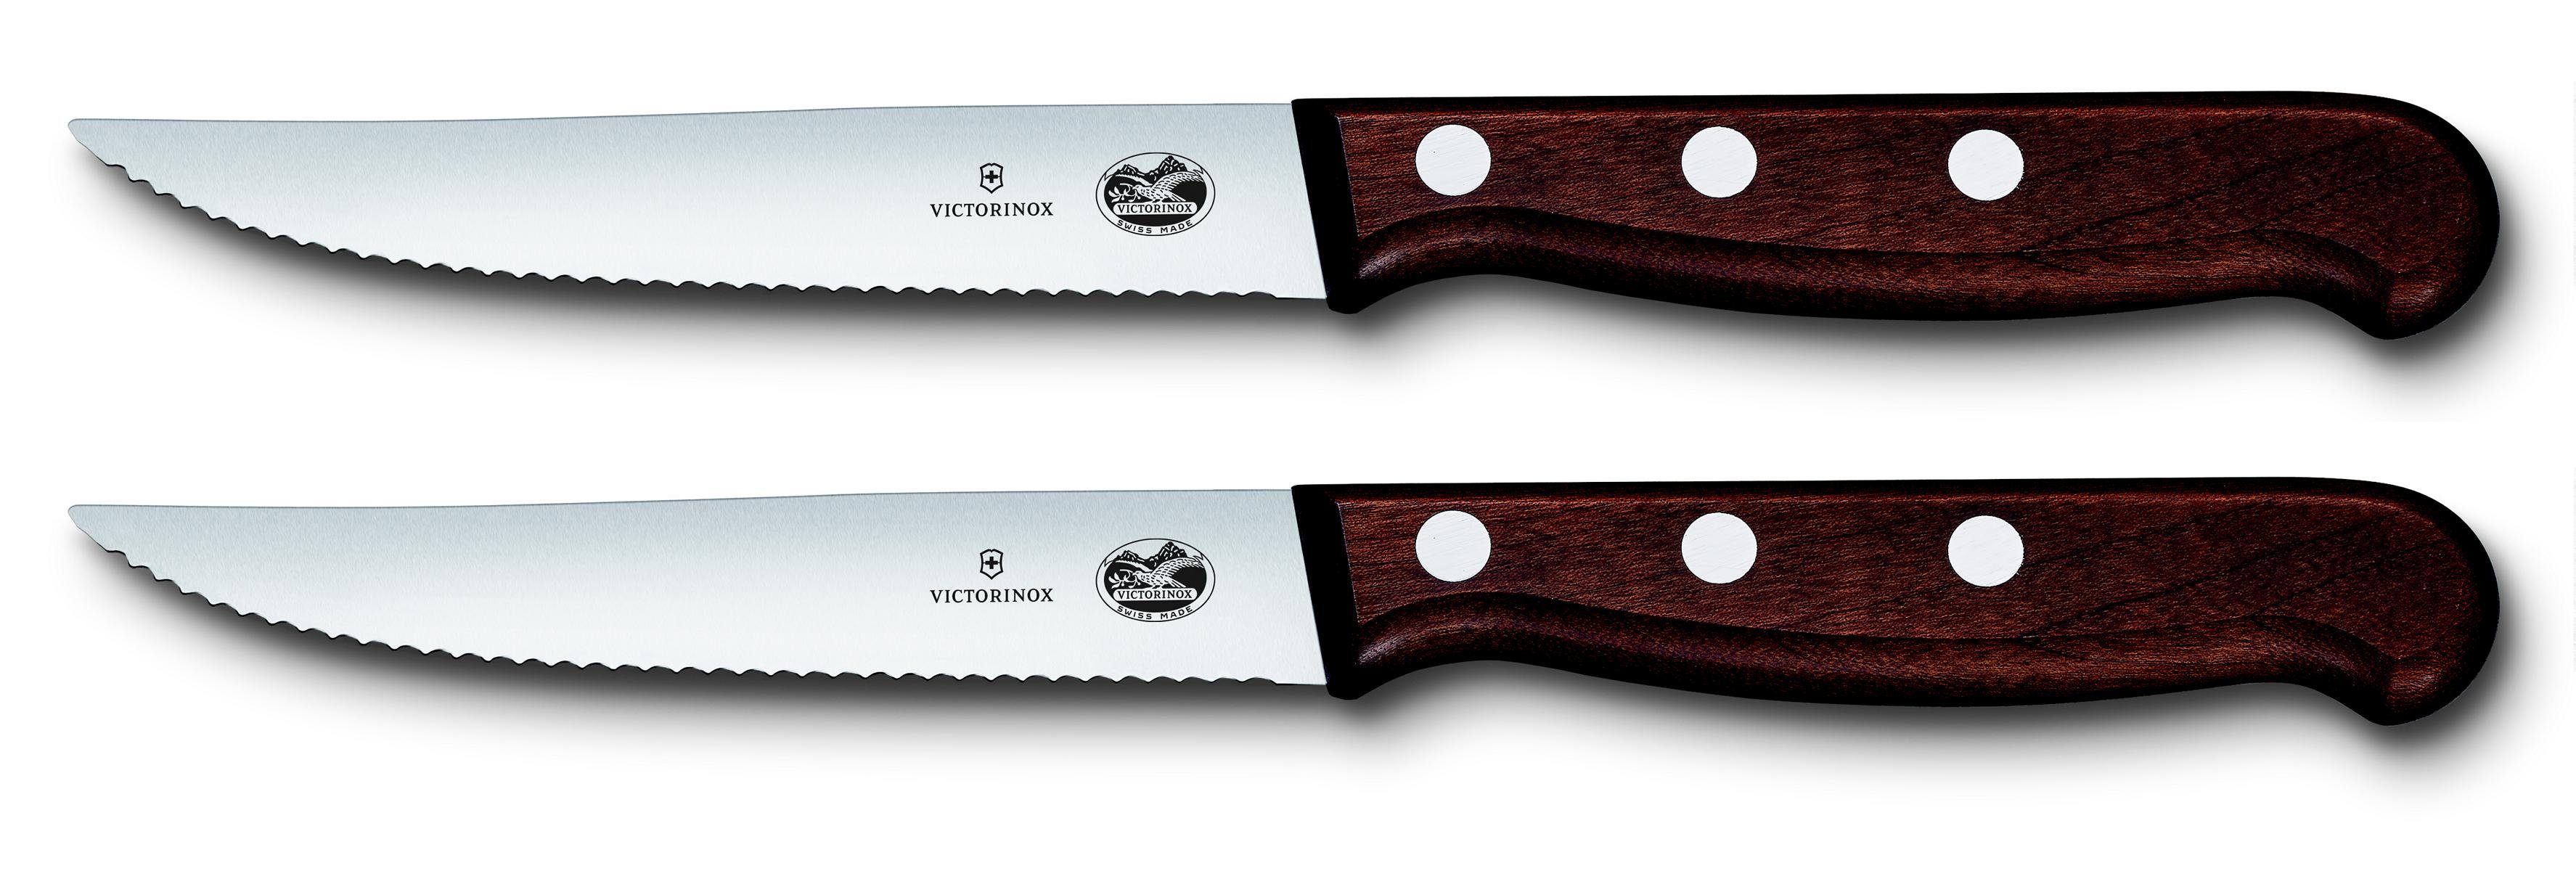 Victorinox Ahornholz,Wellenschliff, Taschenmesser 2-teilig Steakmesser-Set, 12 cm, mod